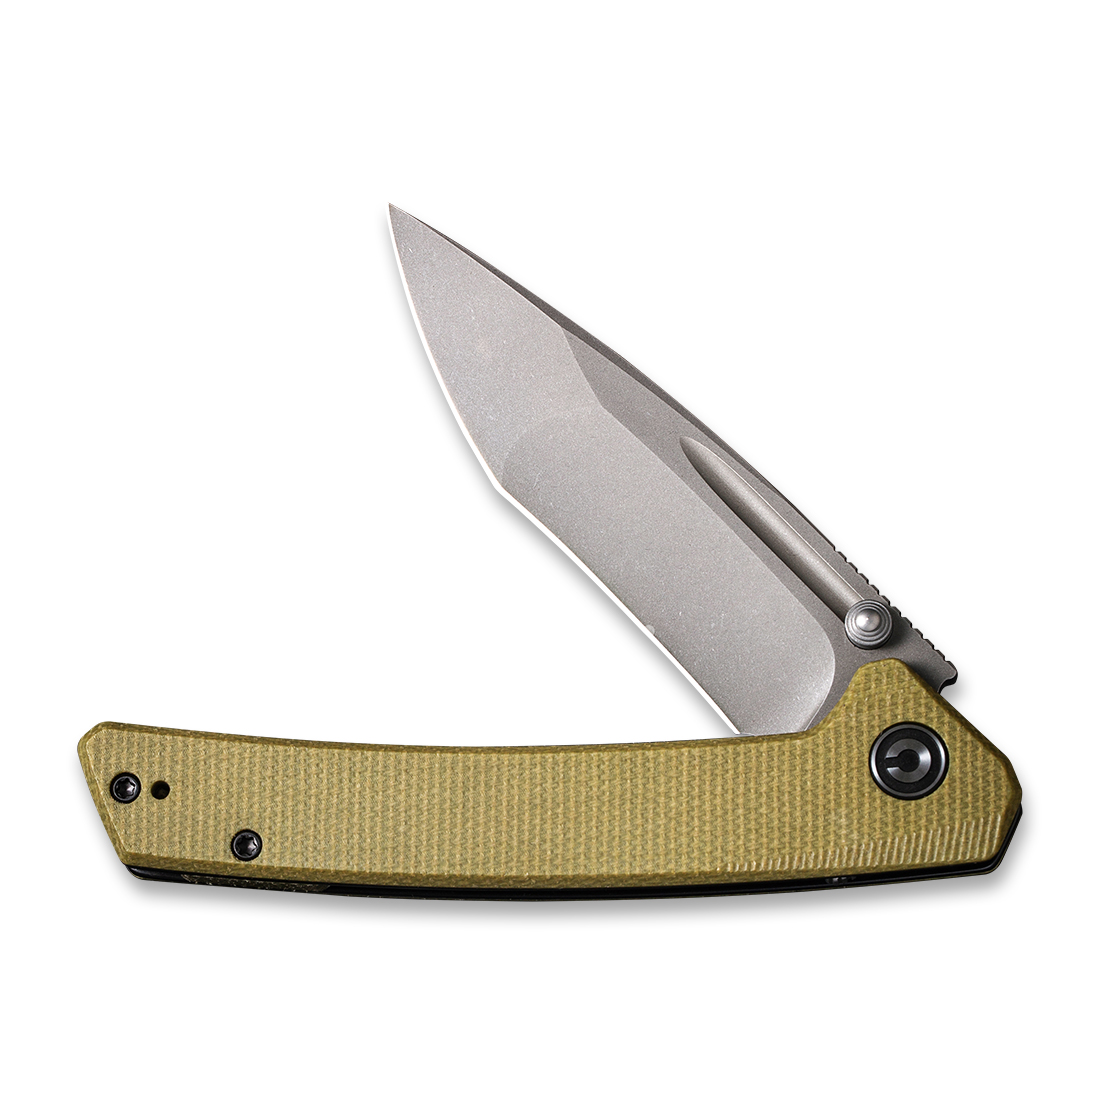 CIVIVI Keen Nadder Liner Lock C2021C Knife N690 Stainless Steel & Olive G10 Pocket Knives